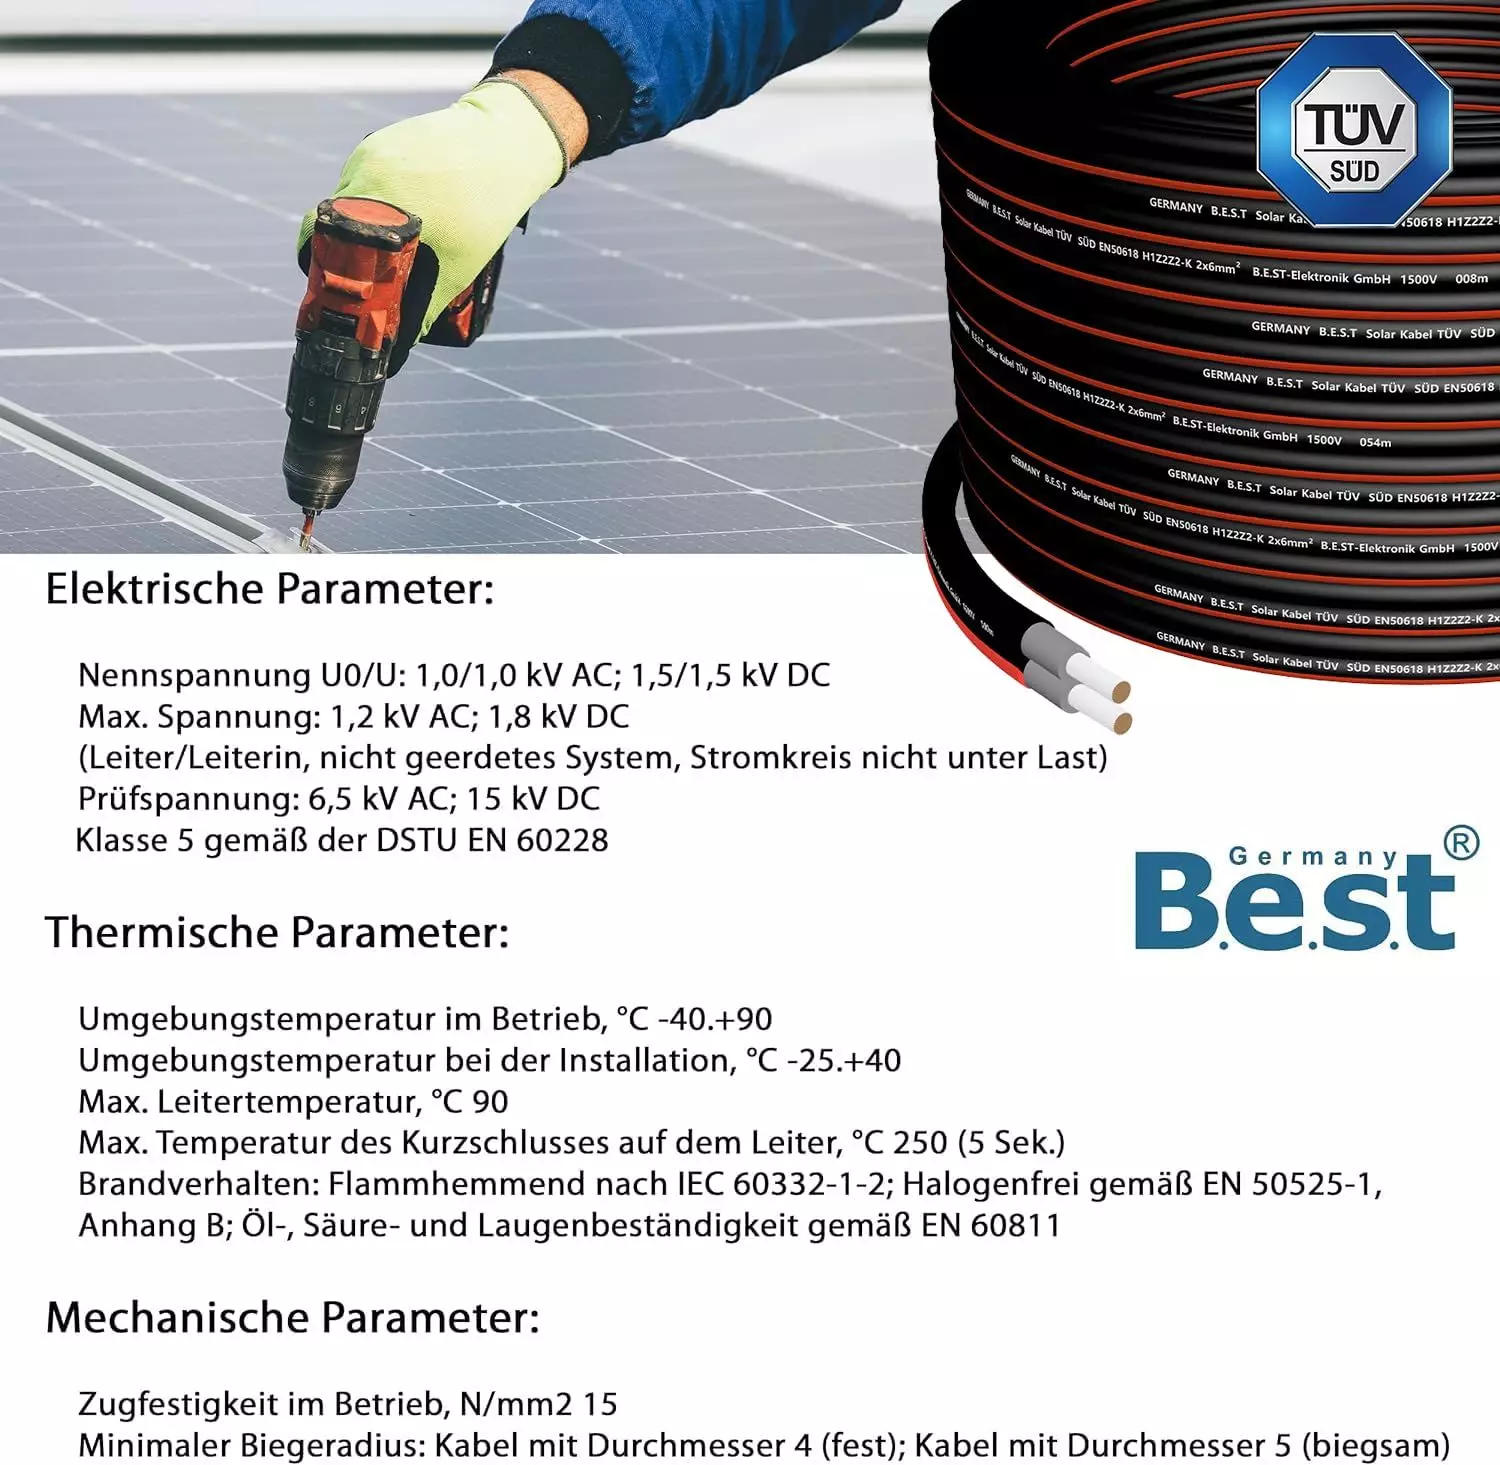 50m Germany B.E.S.T Solarkabel Duplex 6mm² TÜV Zertifiziertes Solar Kabel aus Kupfer, Schwarz und Rot